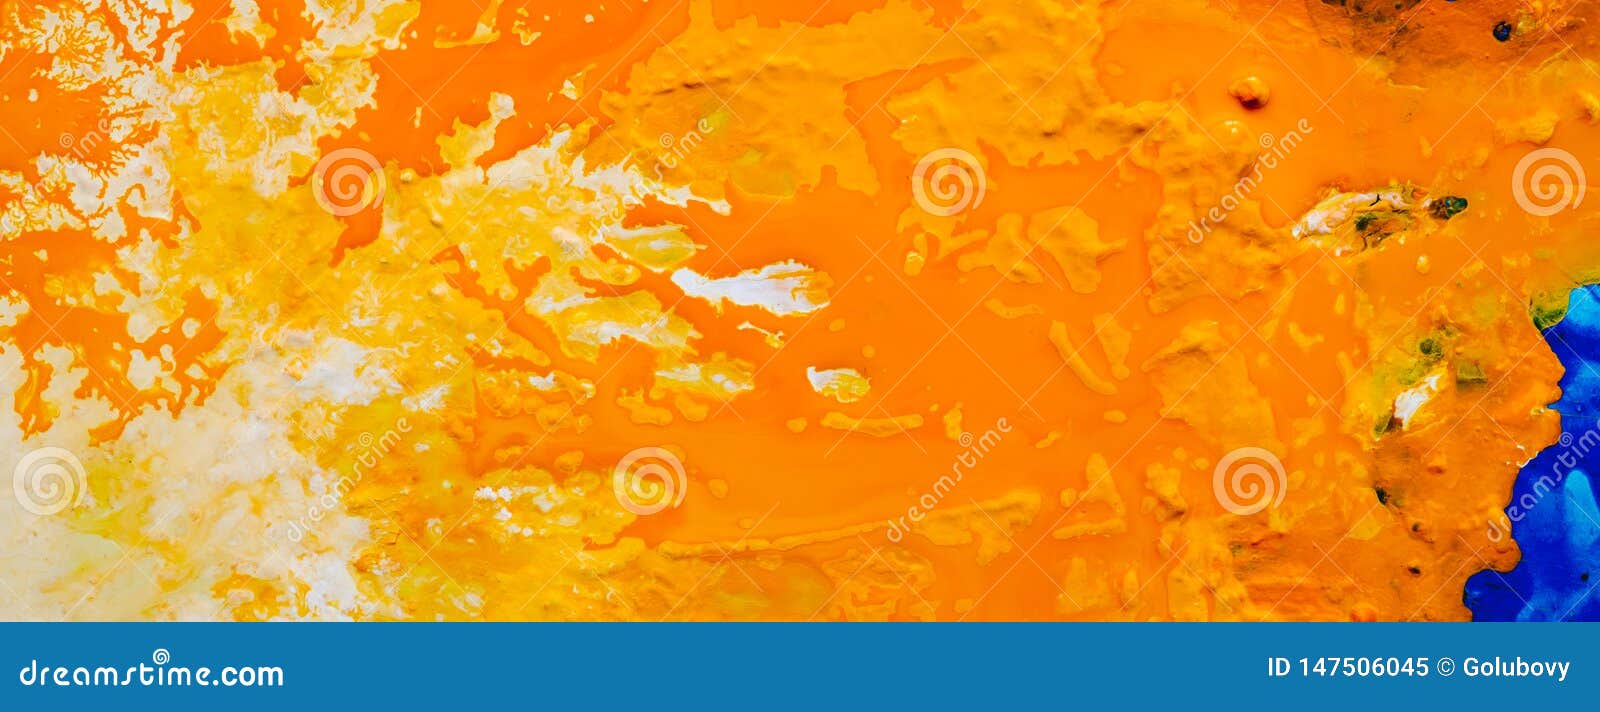 Các bạn yêu thích sự đơn giản và tinh tế chắc chắn sẽ không thể bỏ qua hình ảnh nền trộn sơn trắng vàng cam này. Một sự kết hợp tinh tế, tạo nên một không gian rực rỡ và ấm áp cho thiết bị của bạn. Hãy click vào hình để chiêm ngưỡng sự đẹp của nó.